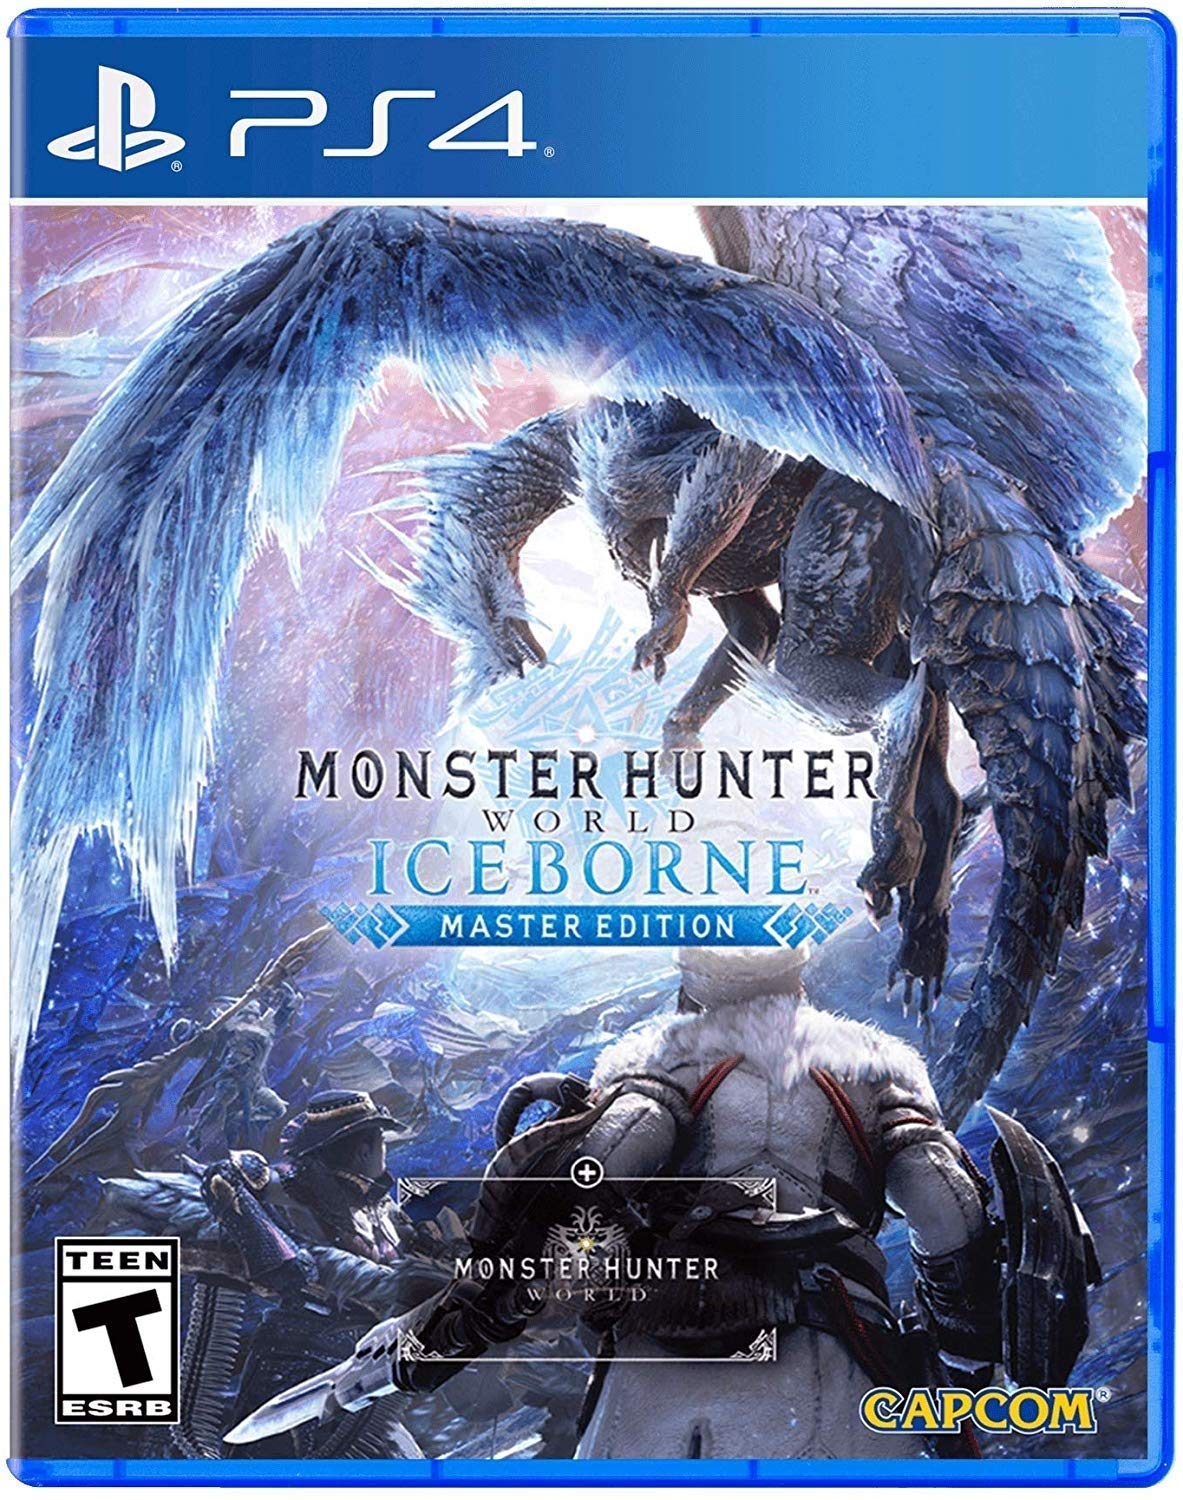 Monster Hunter World Iceborne PS4 boxart